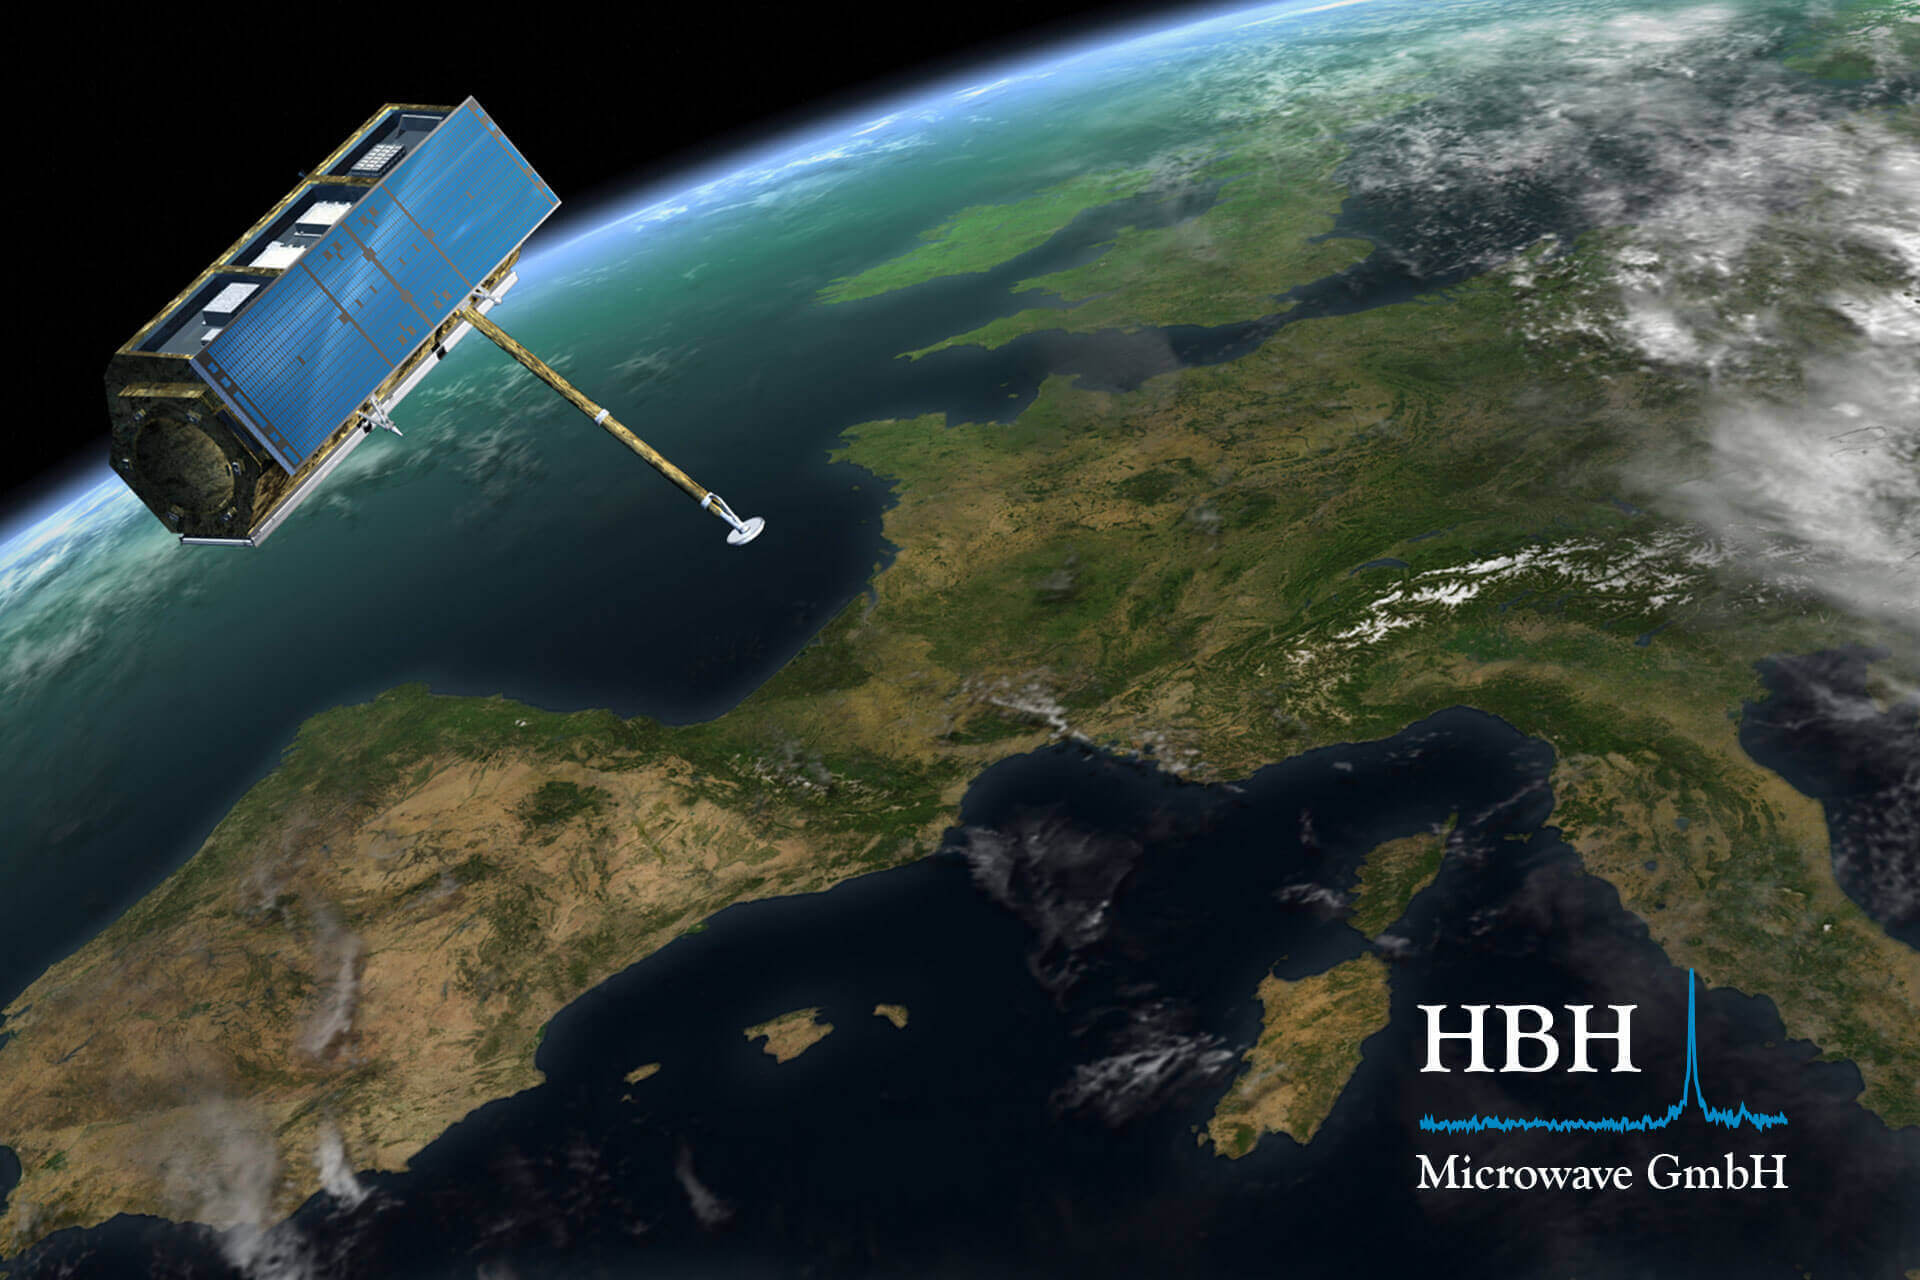 HBH Microwave - Titelbild für Weltraum-Funk-Produkte